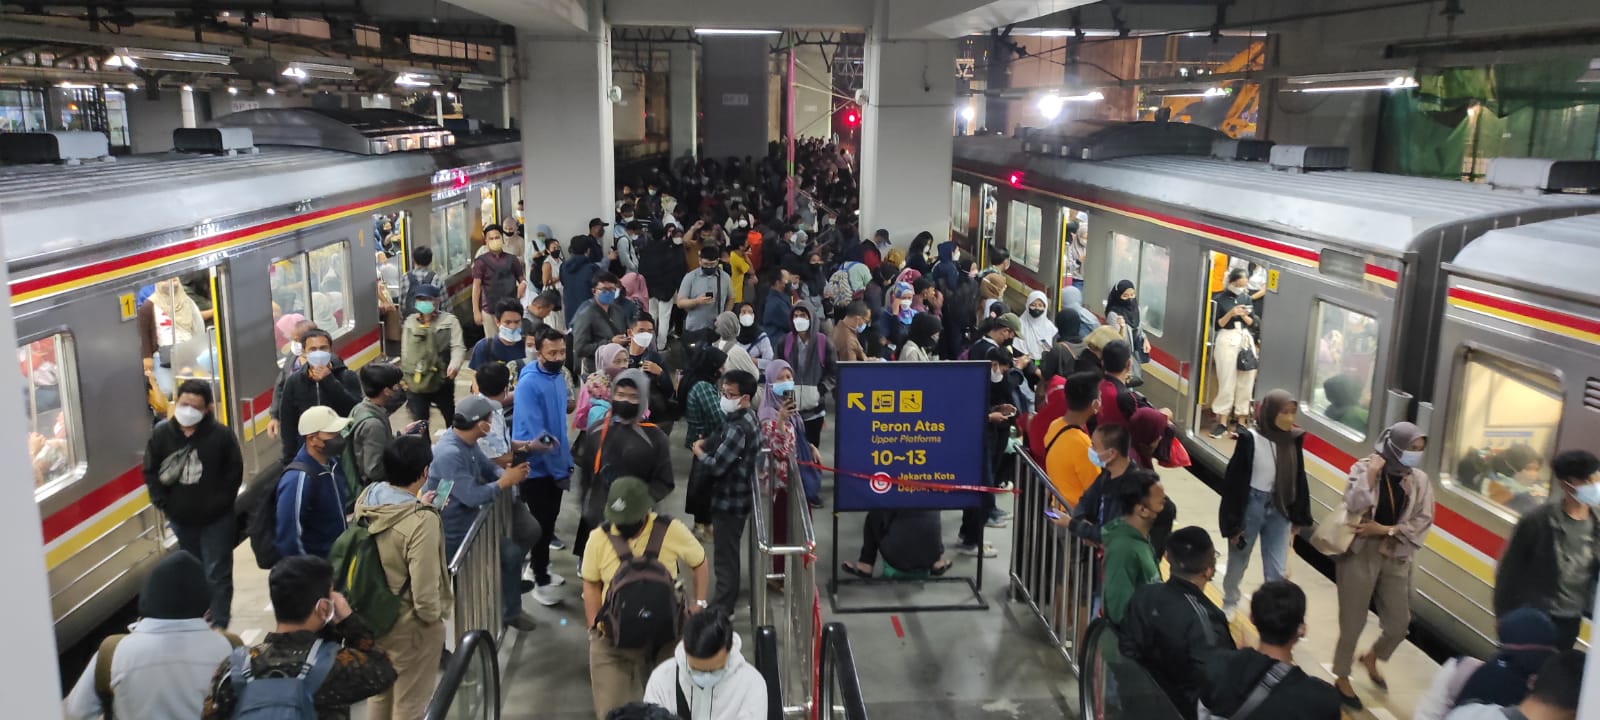 Hari Ini KAI Lakukan Switch Over di Stasiun Manggarai, Cek Perubahan Rutenya